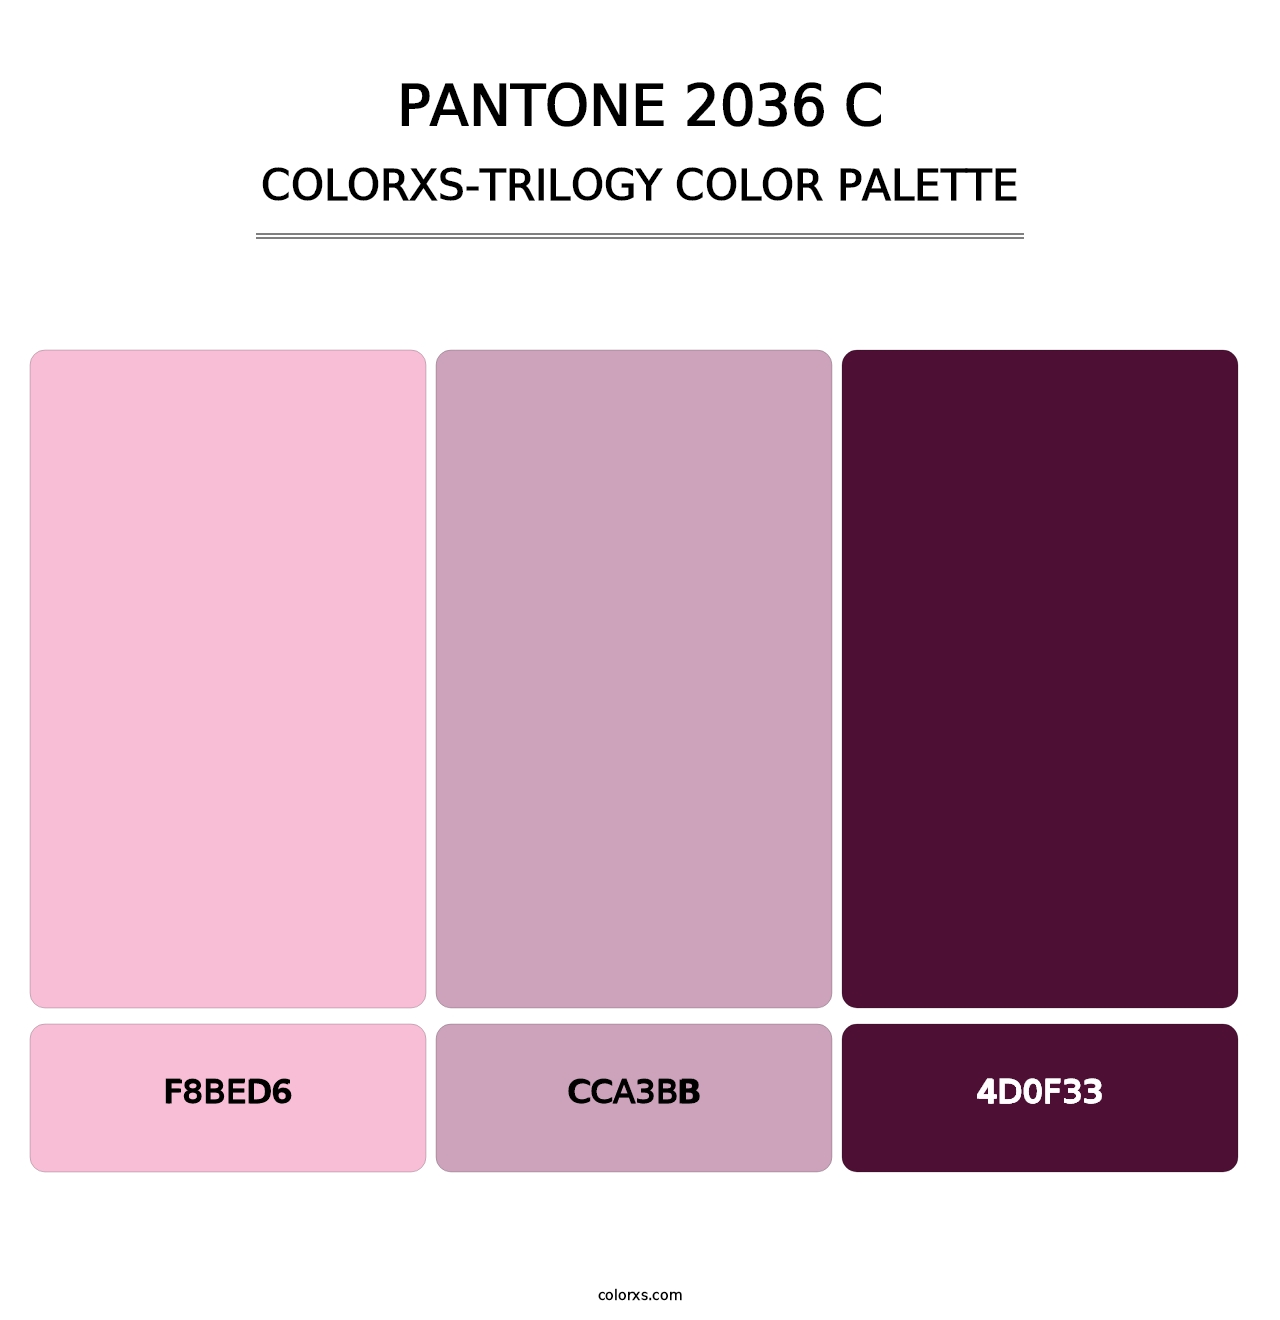 PANTONE 2036 C - Colorxs Trilogy Palette